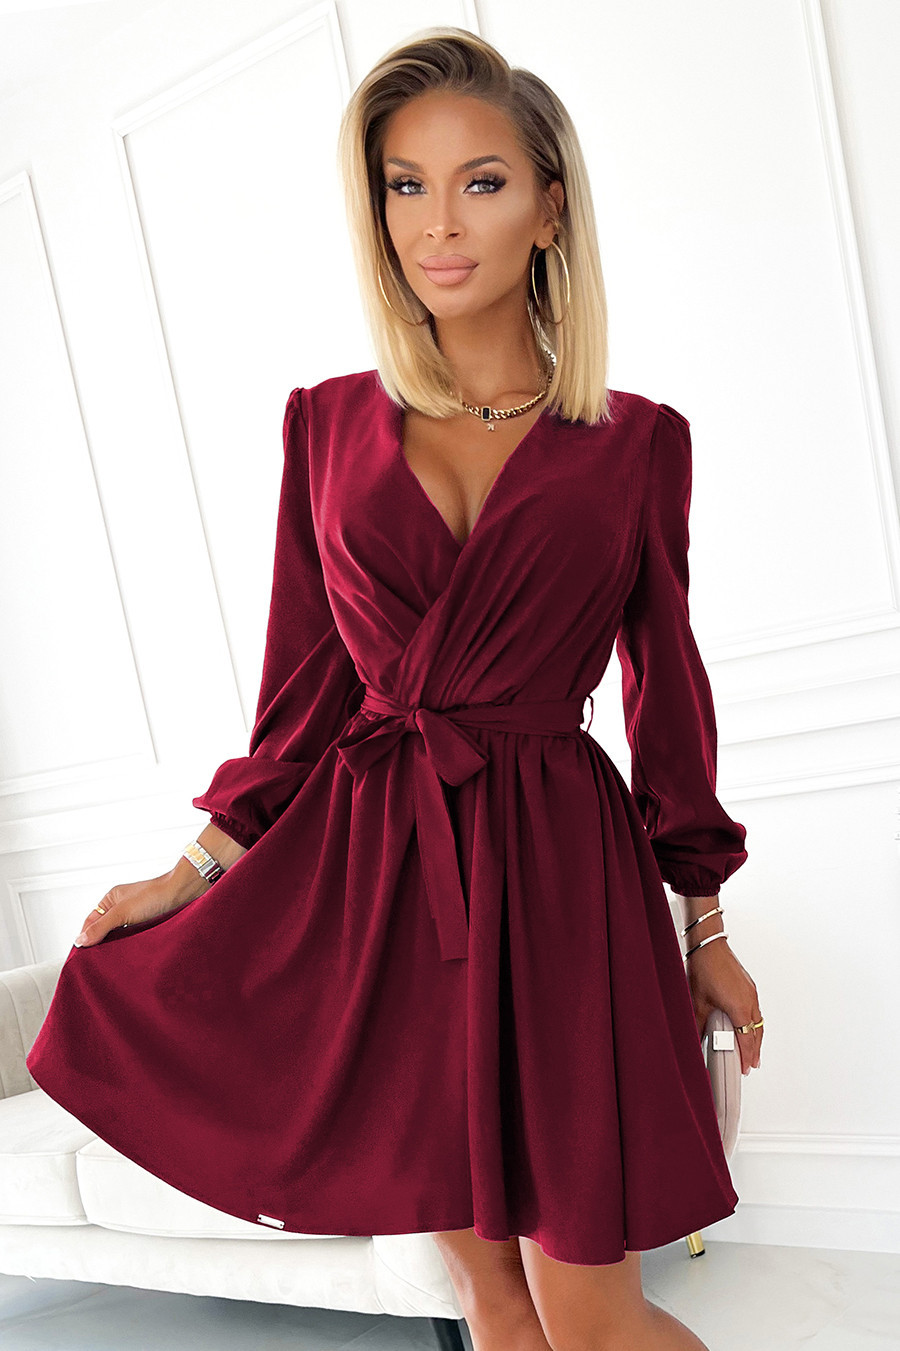 BINDY - Velmi žensky působící dámské šaty ve vínové bordó barvě s dekoltem 339-3 L/XL